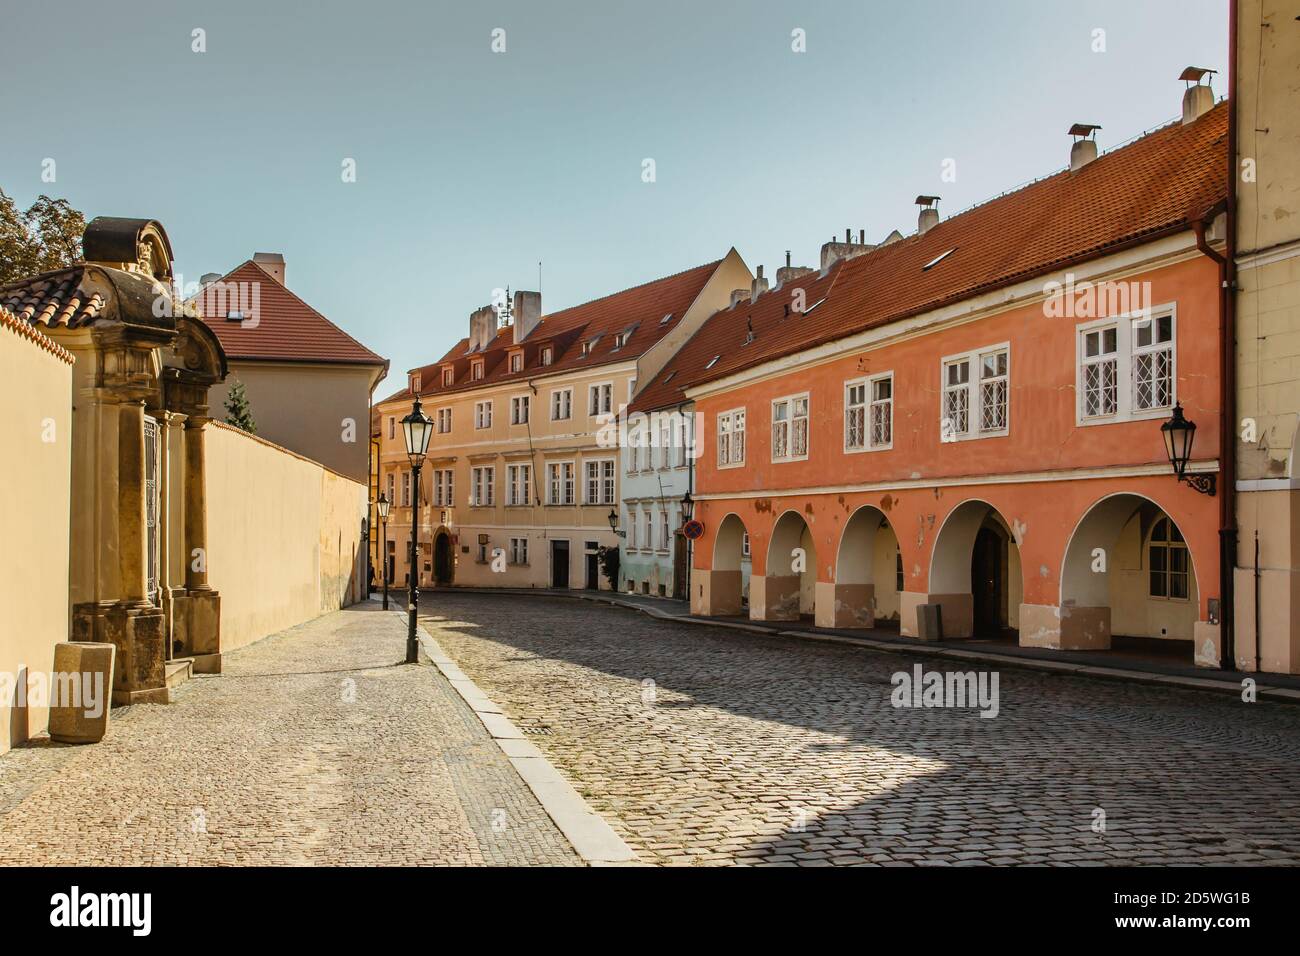 Leere Straße mit bunten Häusern in Prag, Tschechische Hauptstadt. Keine Touristen, keine Besichtigungen während COVID 19 Quarantäne, September 2020. Historisches Zentrum mit Stockfoto